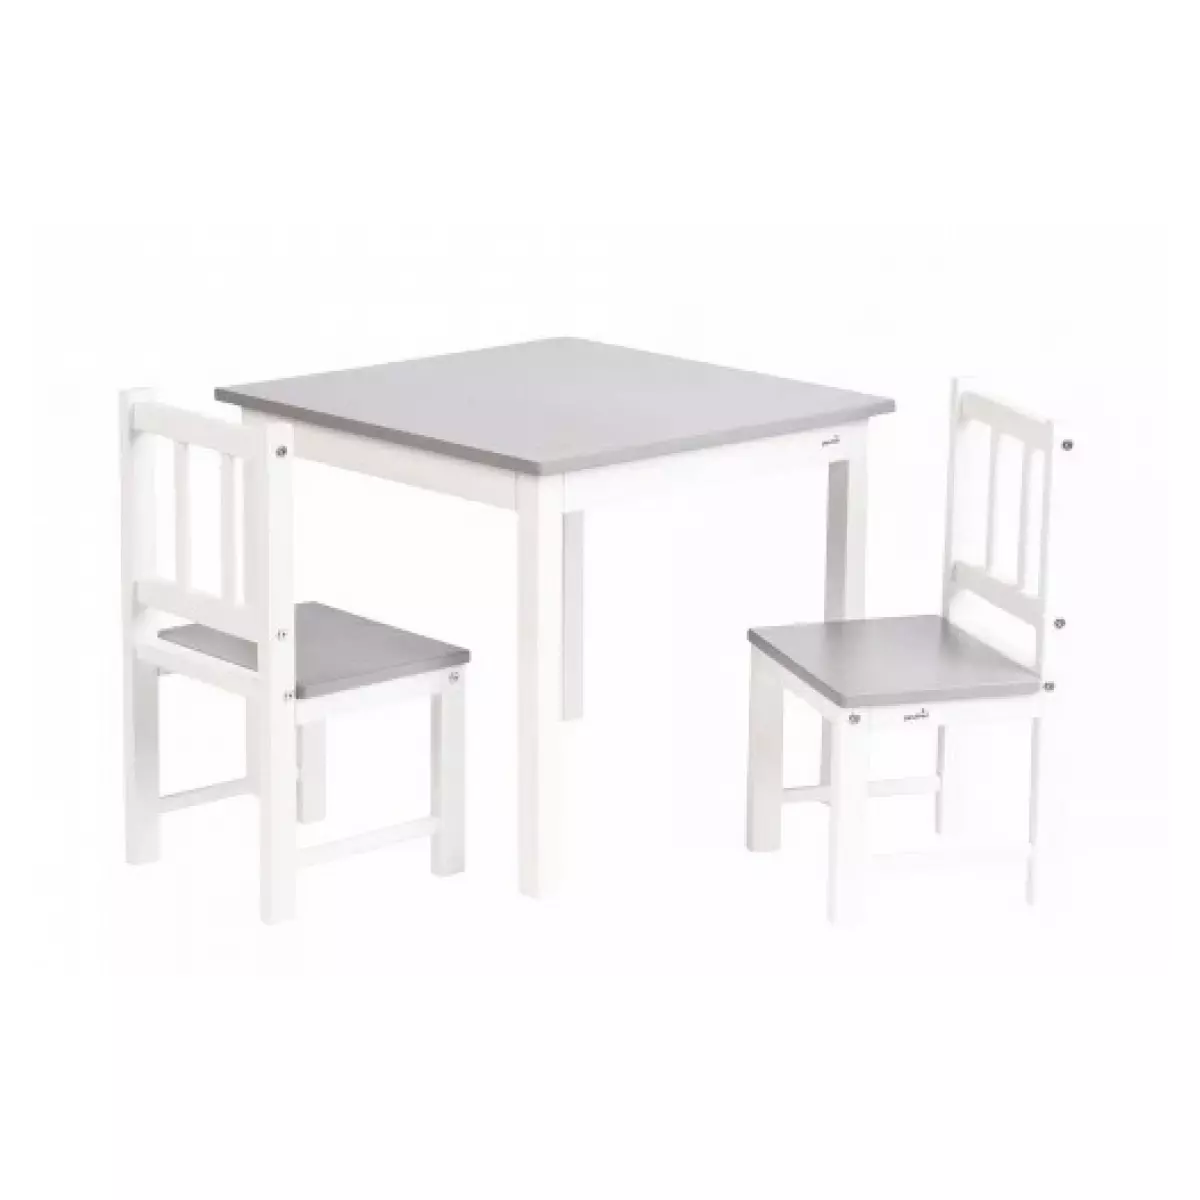 GEUTHER Meubles d activite en Hevea 2 chaises et une table Couleur Blanc